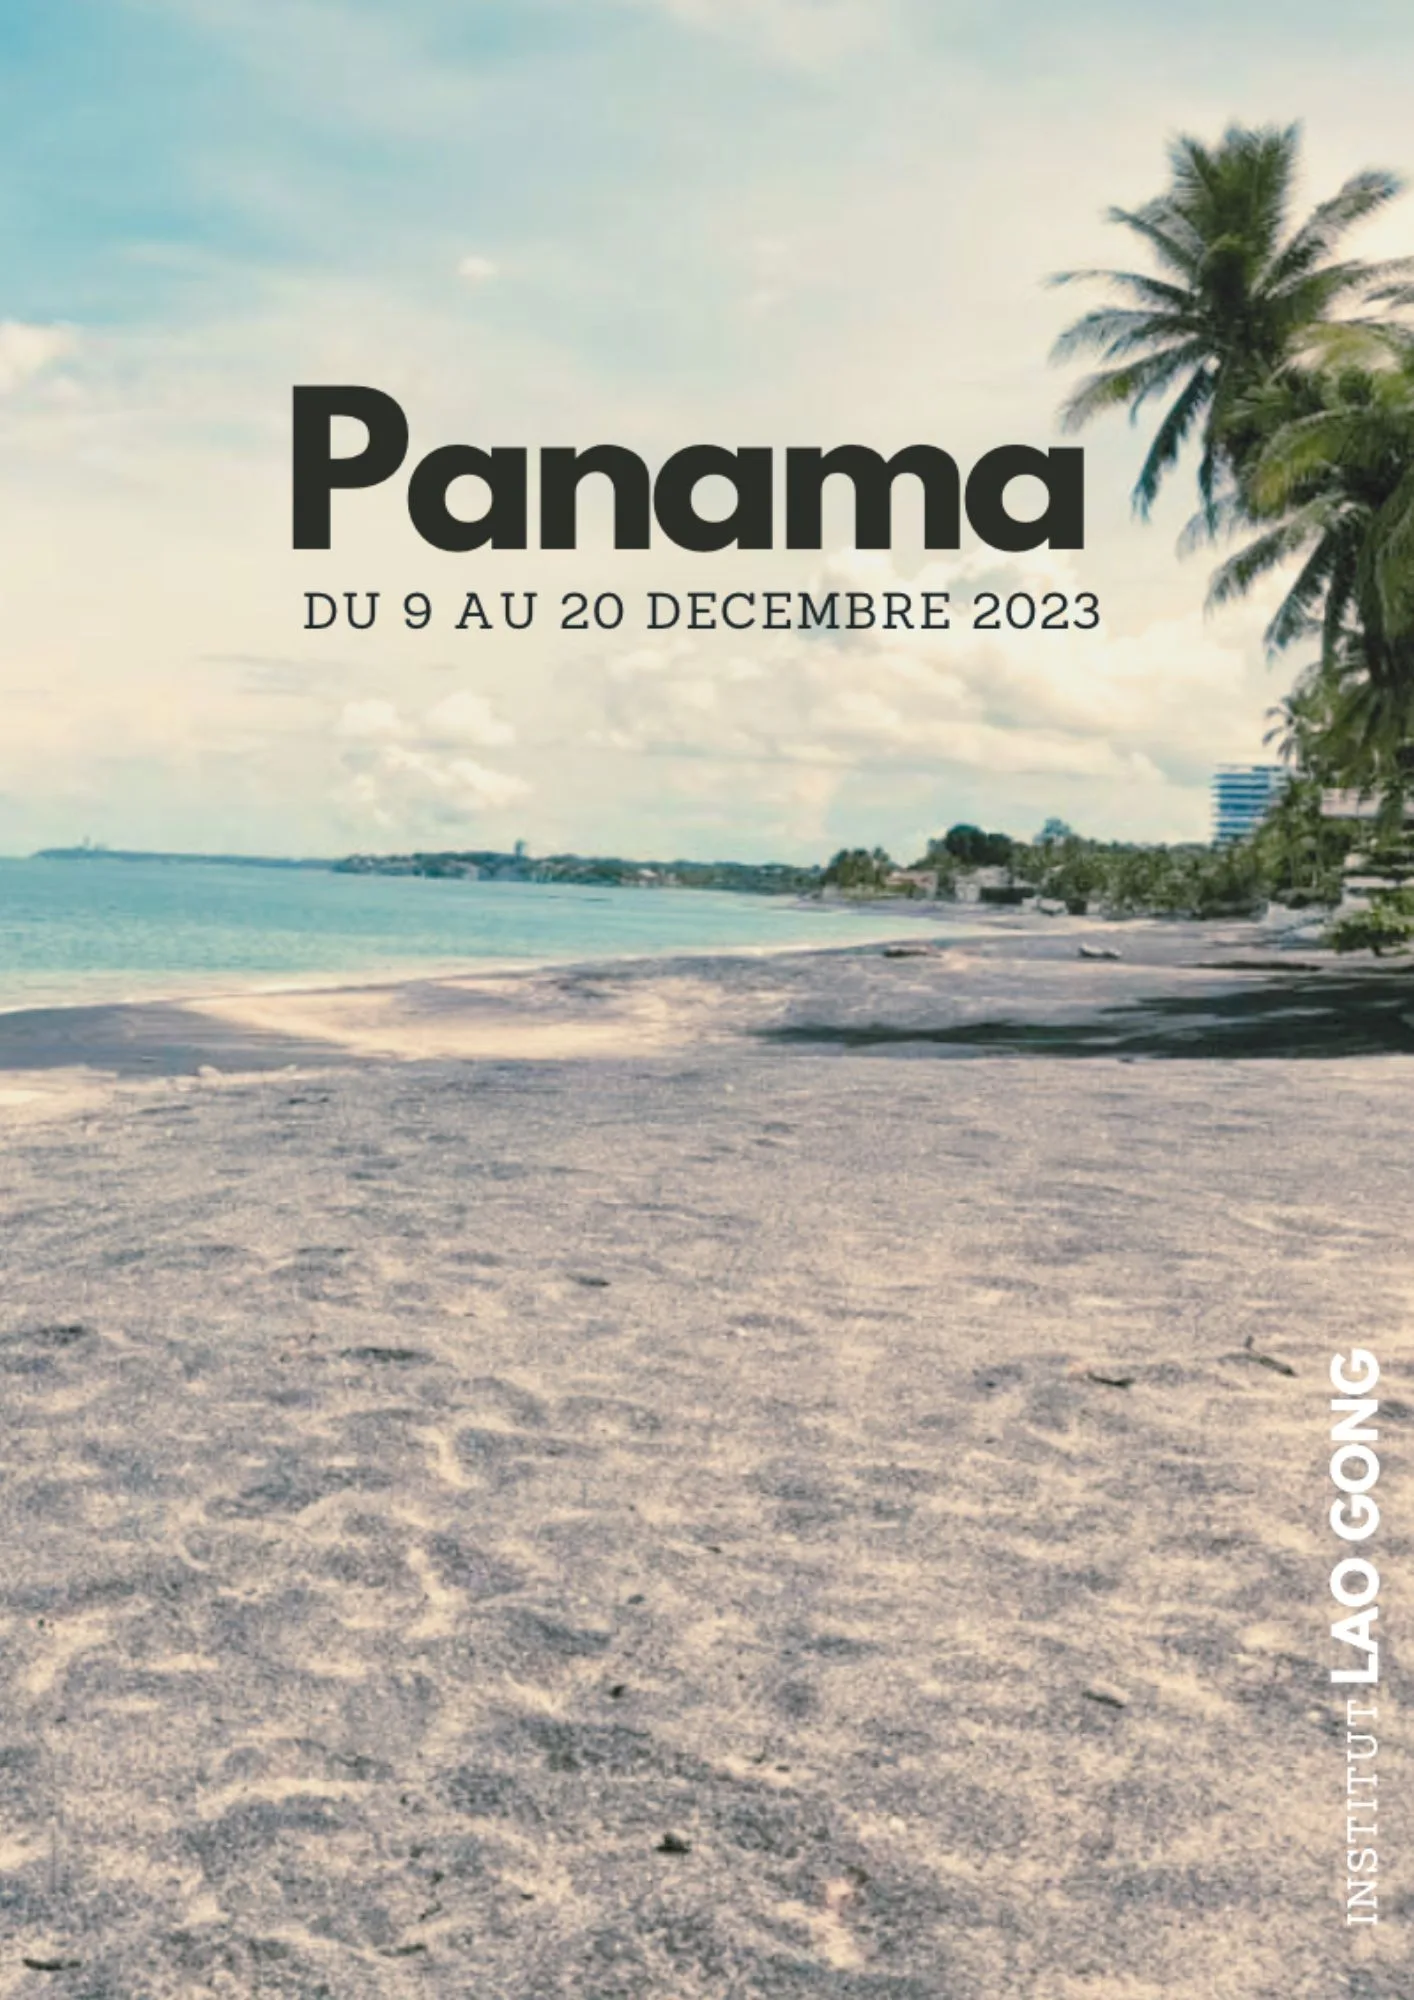 PANAMA - Du 9 AU 20 DECEMBRE 2023